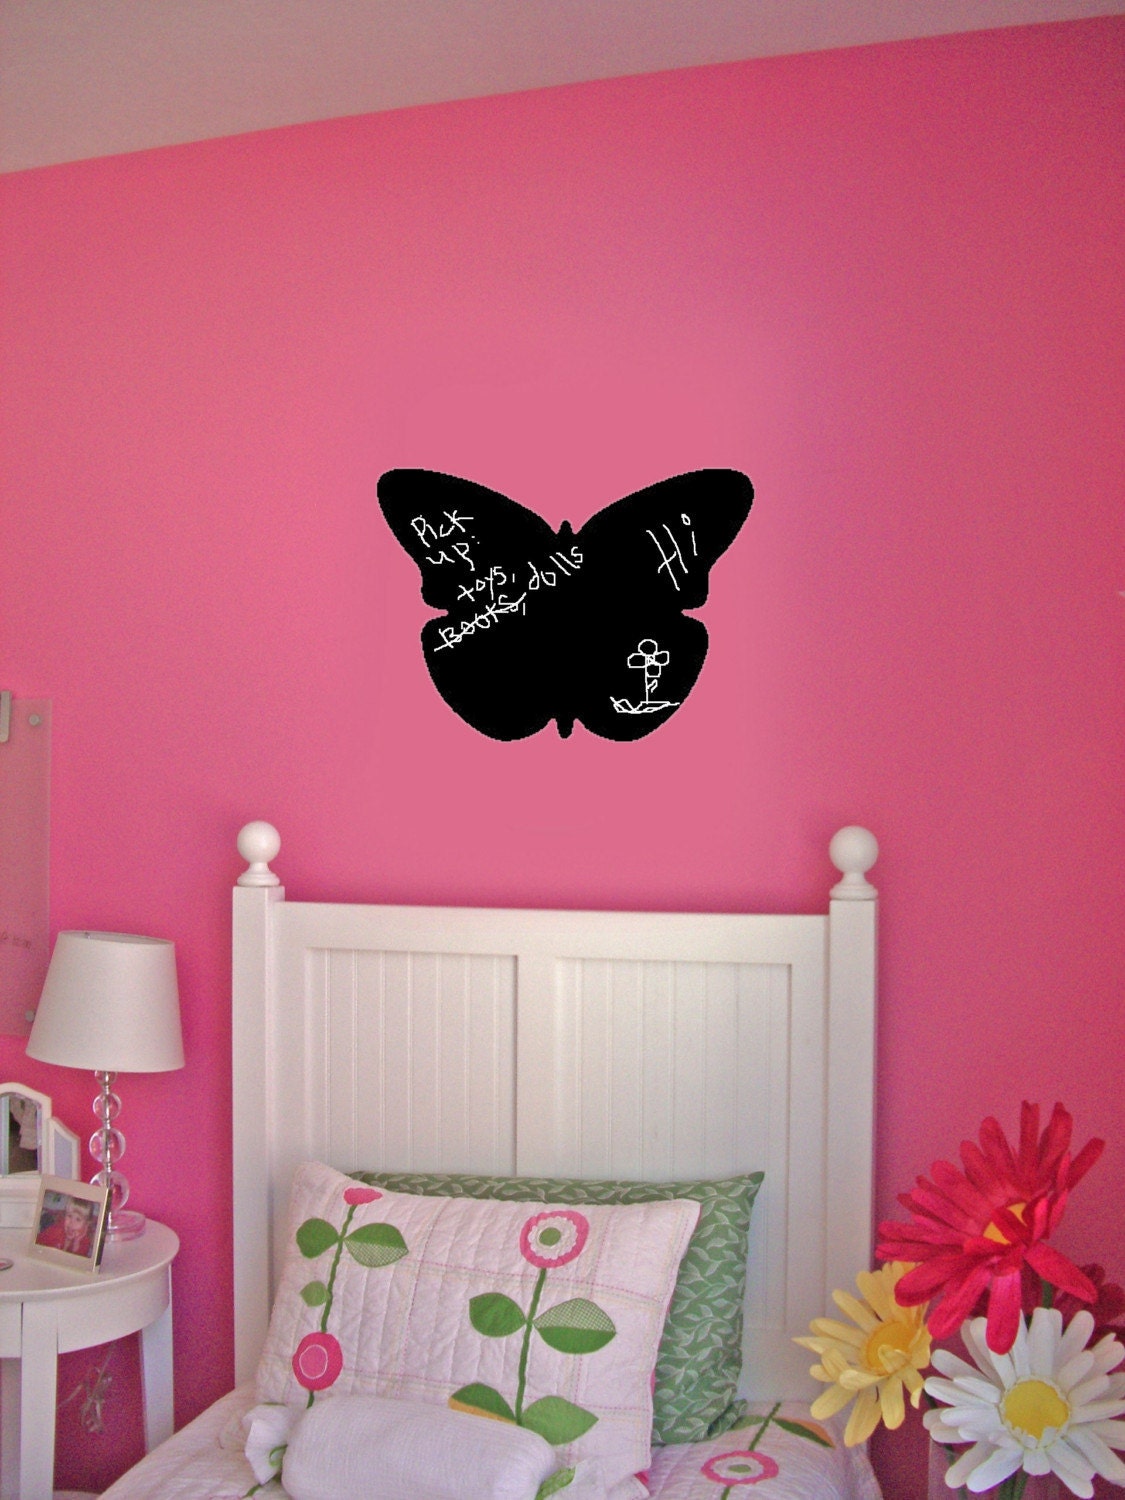 Vinyl wall art Butterfly Chalkboard sticker